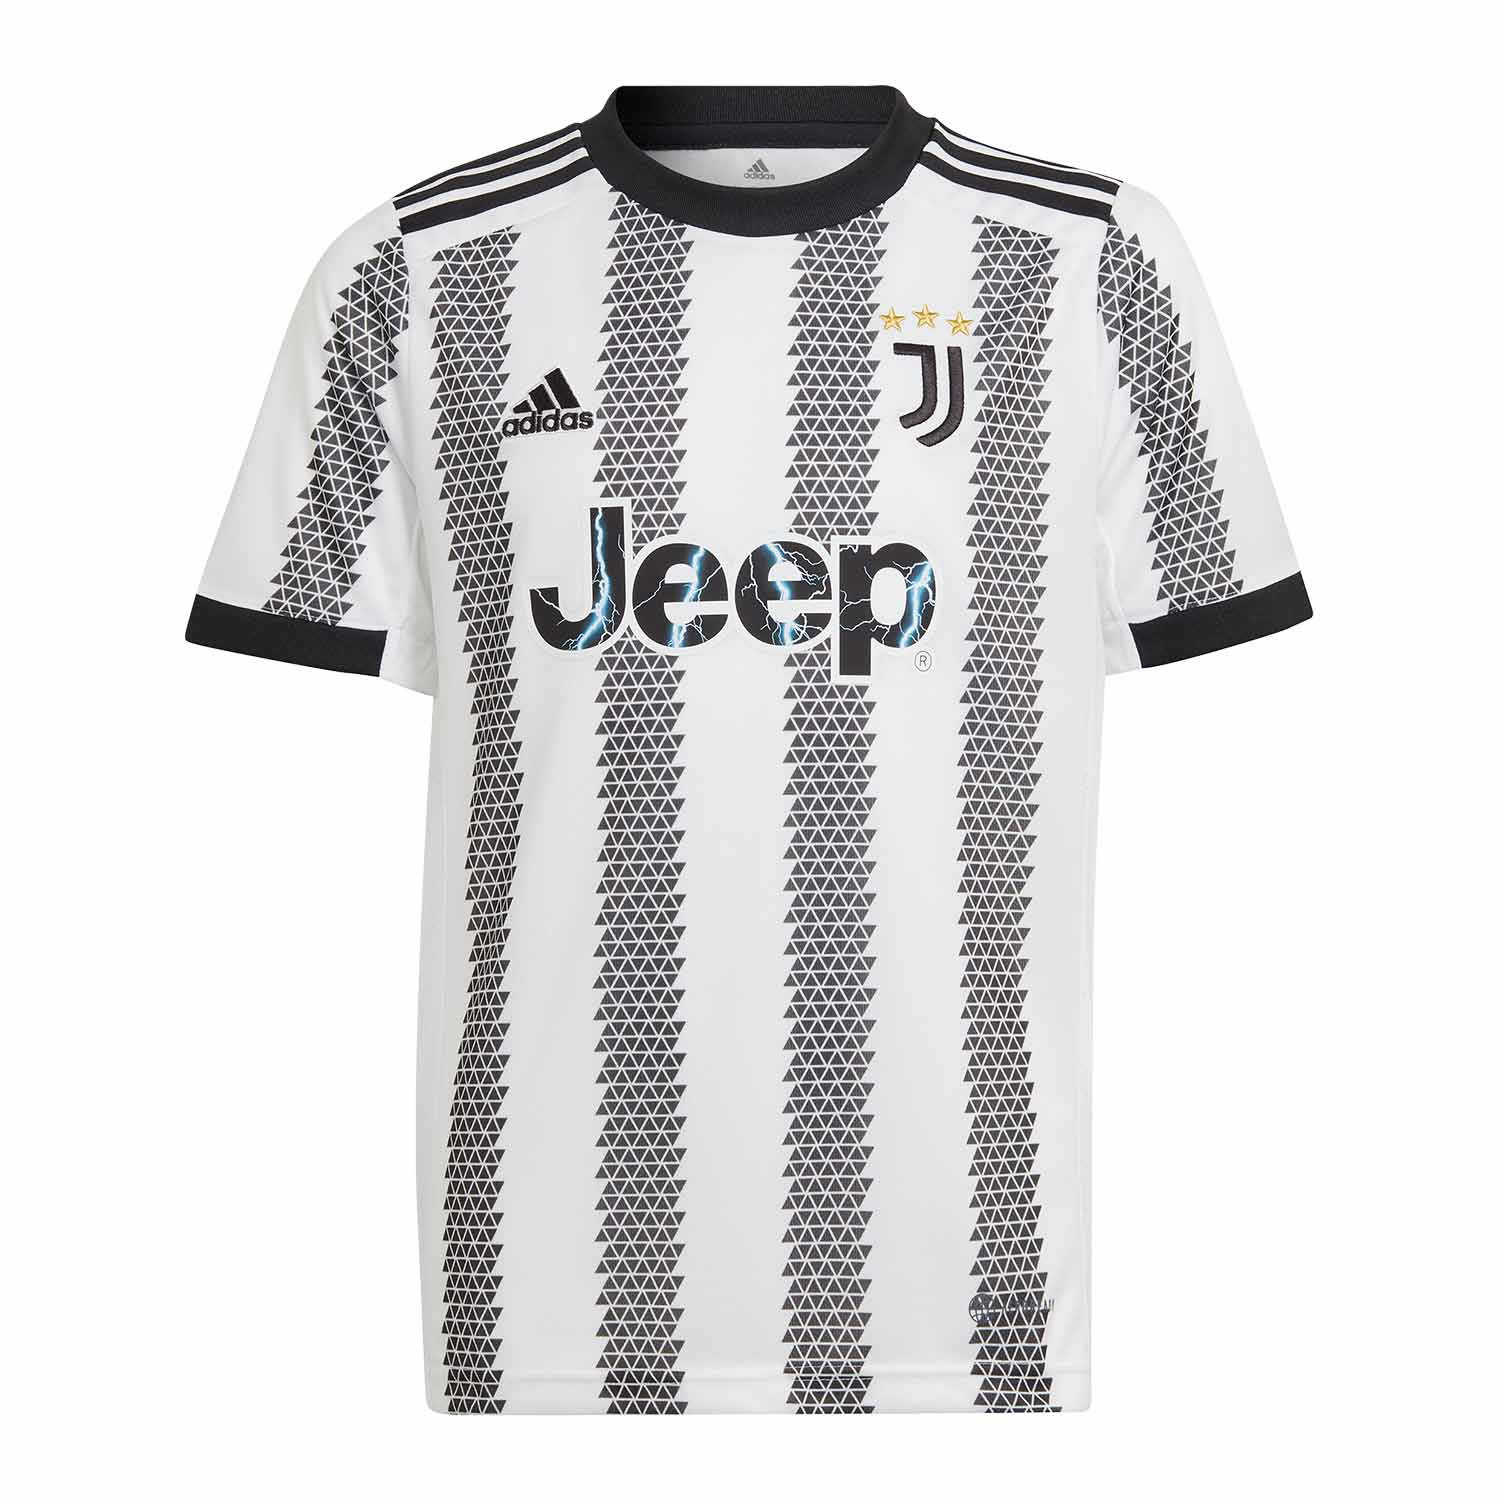 Camiseta adidas Juventus niño blanca negra | futbolmaniaKids